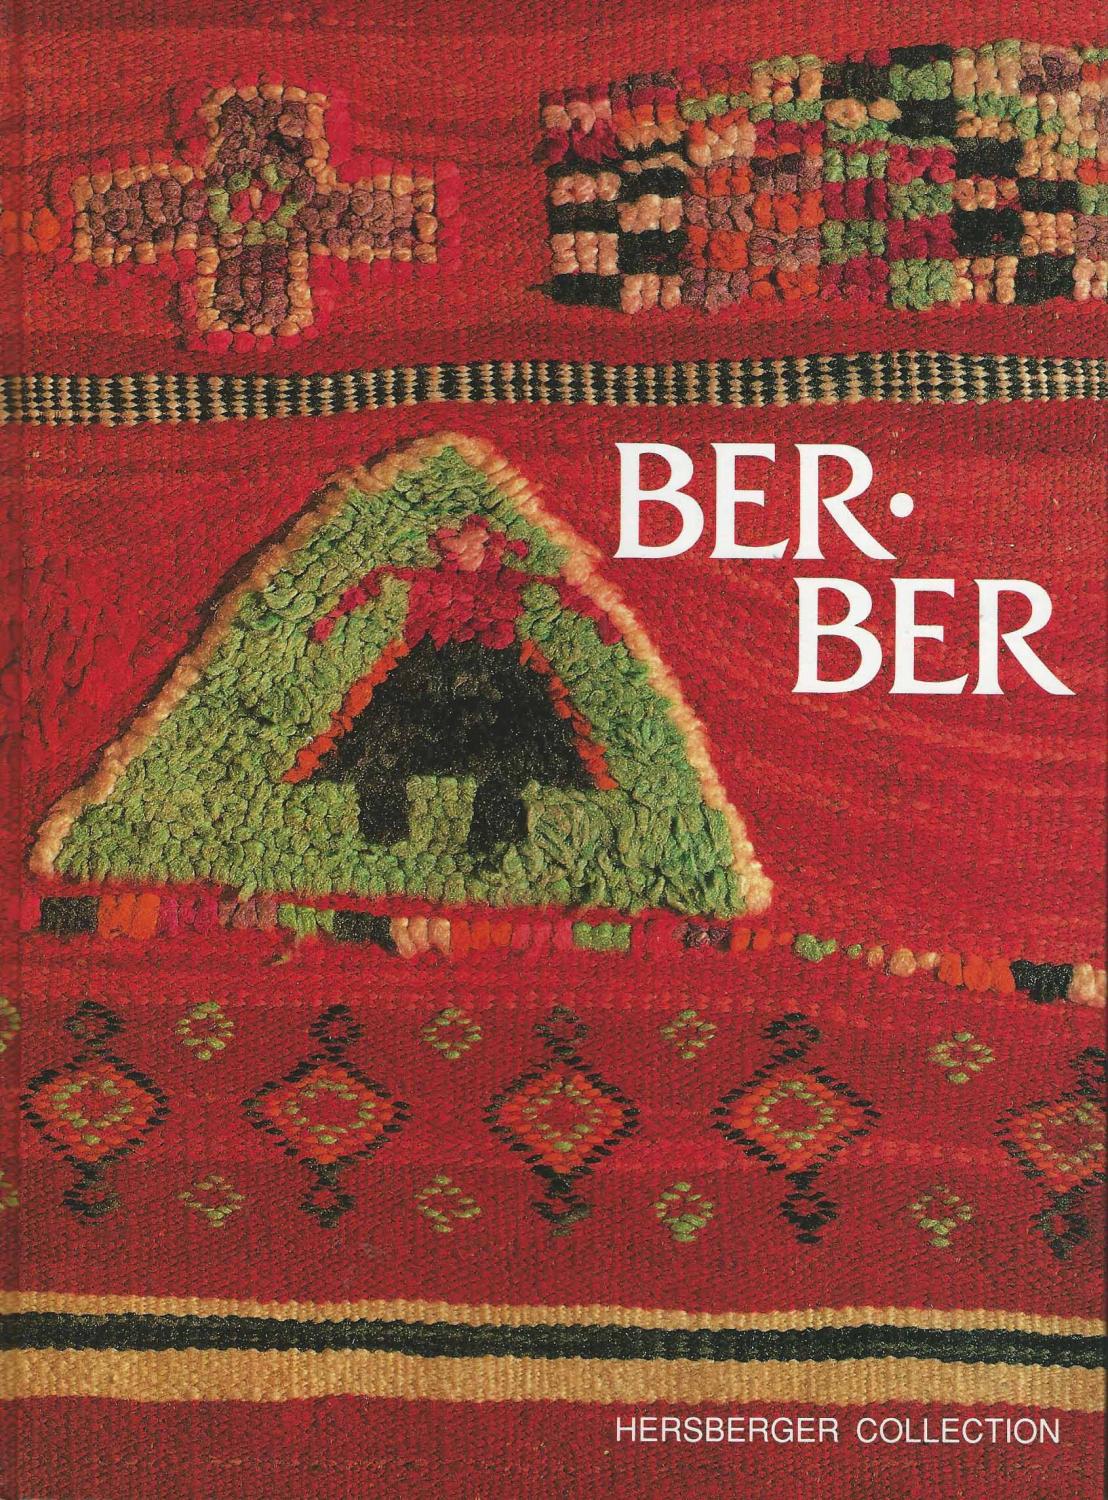 Berber: Stammesteppiche und Textilien aus dem Königreich Marokko - Exponate aus der Collection Richard Hersberger